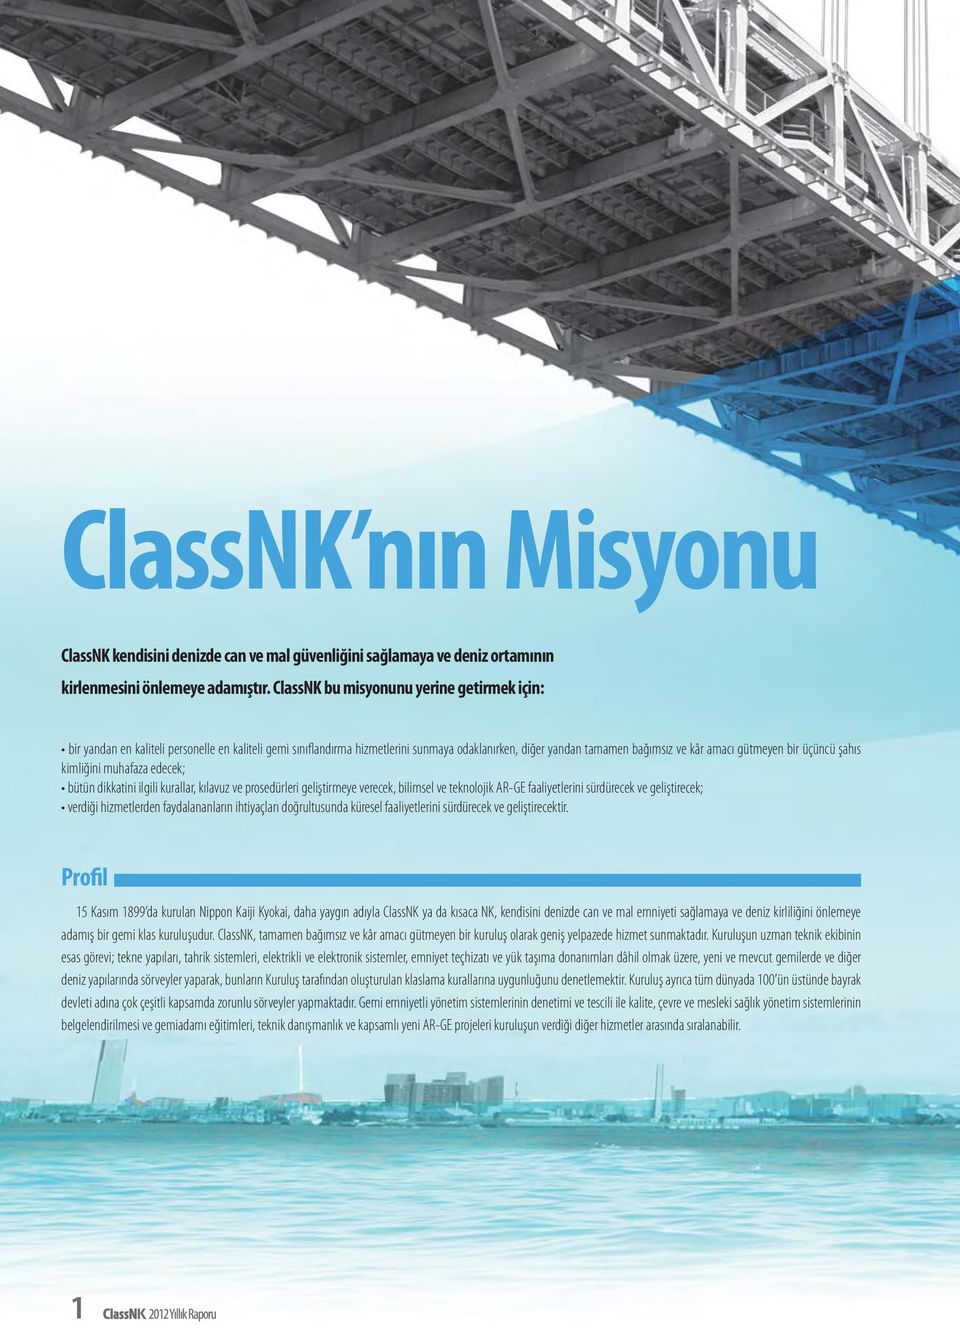 emniyeti sağlamaya ve deniz kirliliğini önlemeye adamış bir gemi klas kuruluşudur. ClassNK, tamamen bağımsız ve kâr amacı gütmeyen bir kuruluş olarak geniş yelpazede hizmet sunmaktadır.